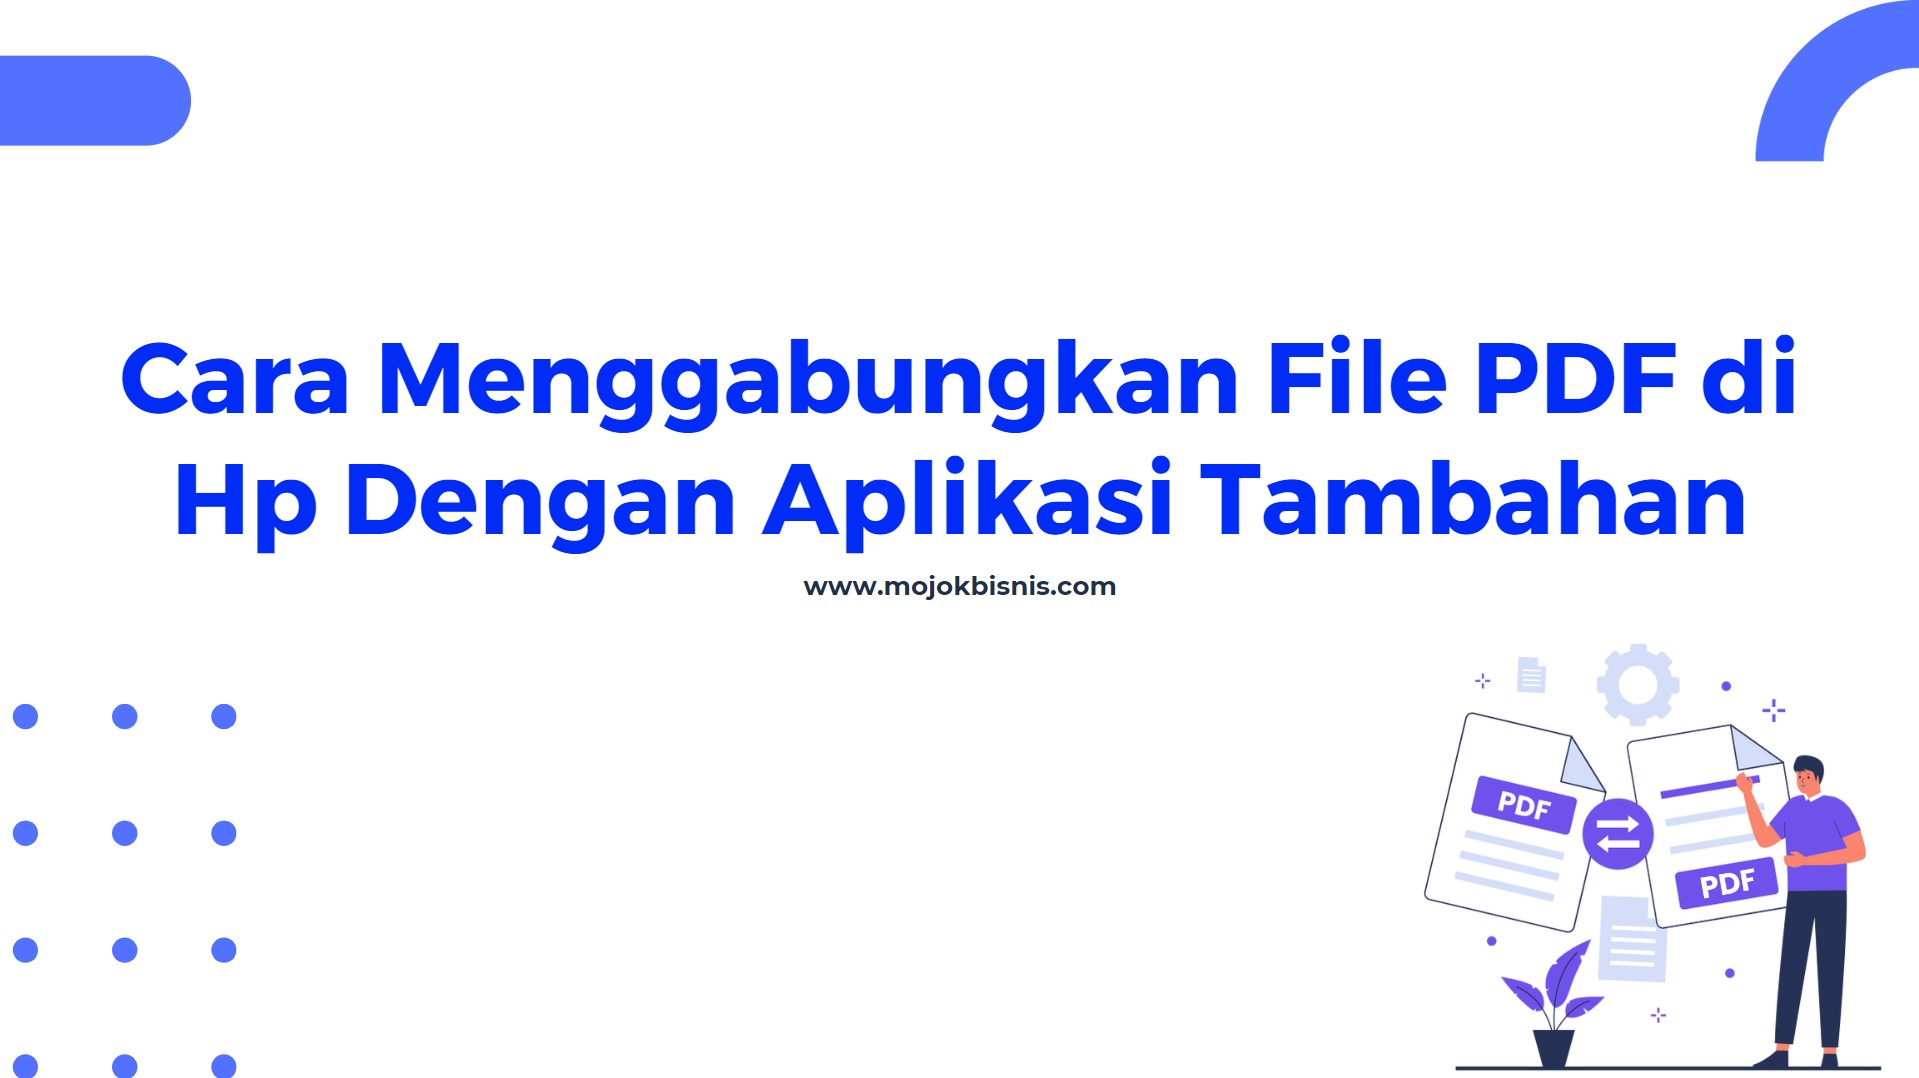 Cara Menggabungkan File PDF di Hp Dengan Aplikasi Tambahan